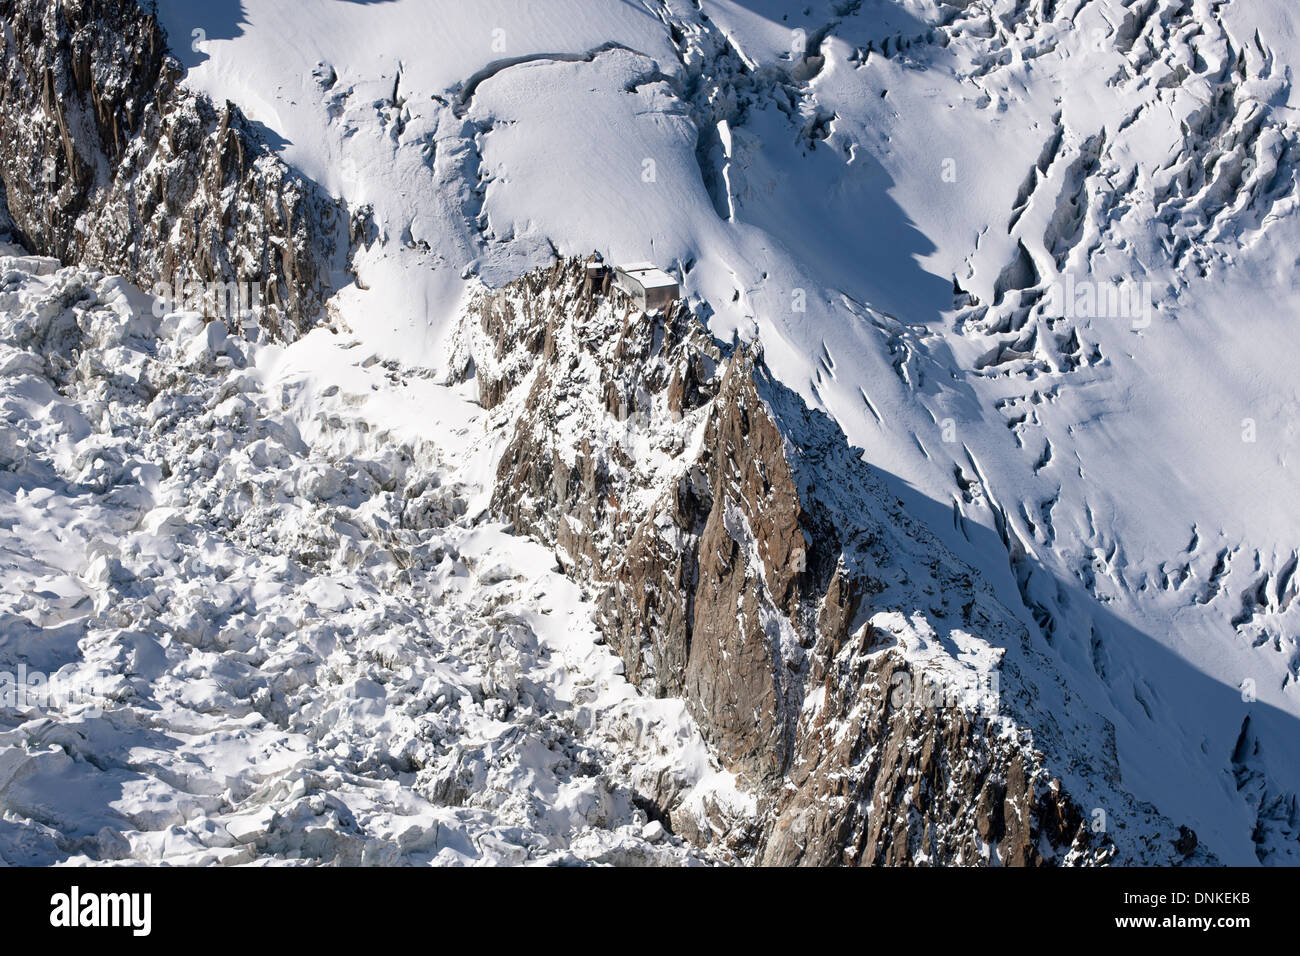 VISTA AEREA. Capanna arroccata precariamente su aghi di granito e circondata da ghiacciai con profondi crepacci. Rifugio Grands Mulets, Chamonix, Francia. Foto Stock